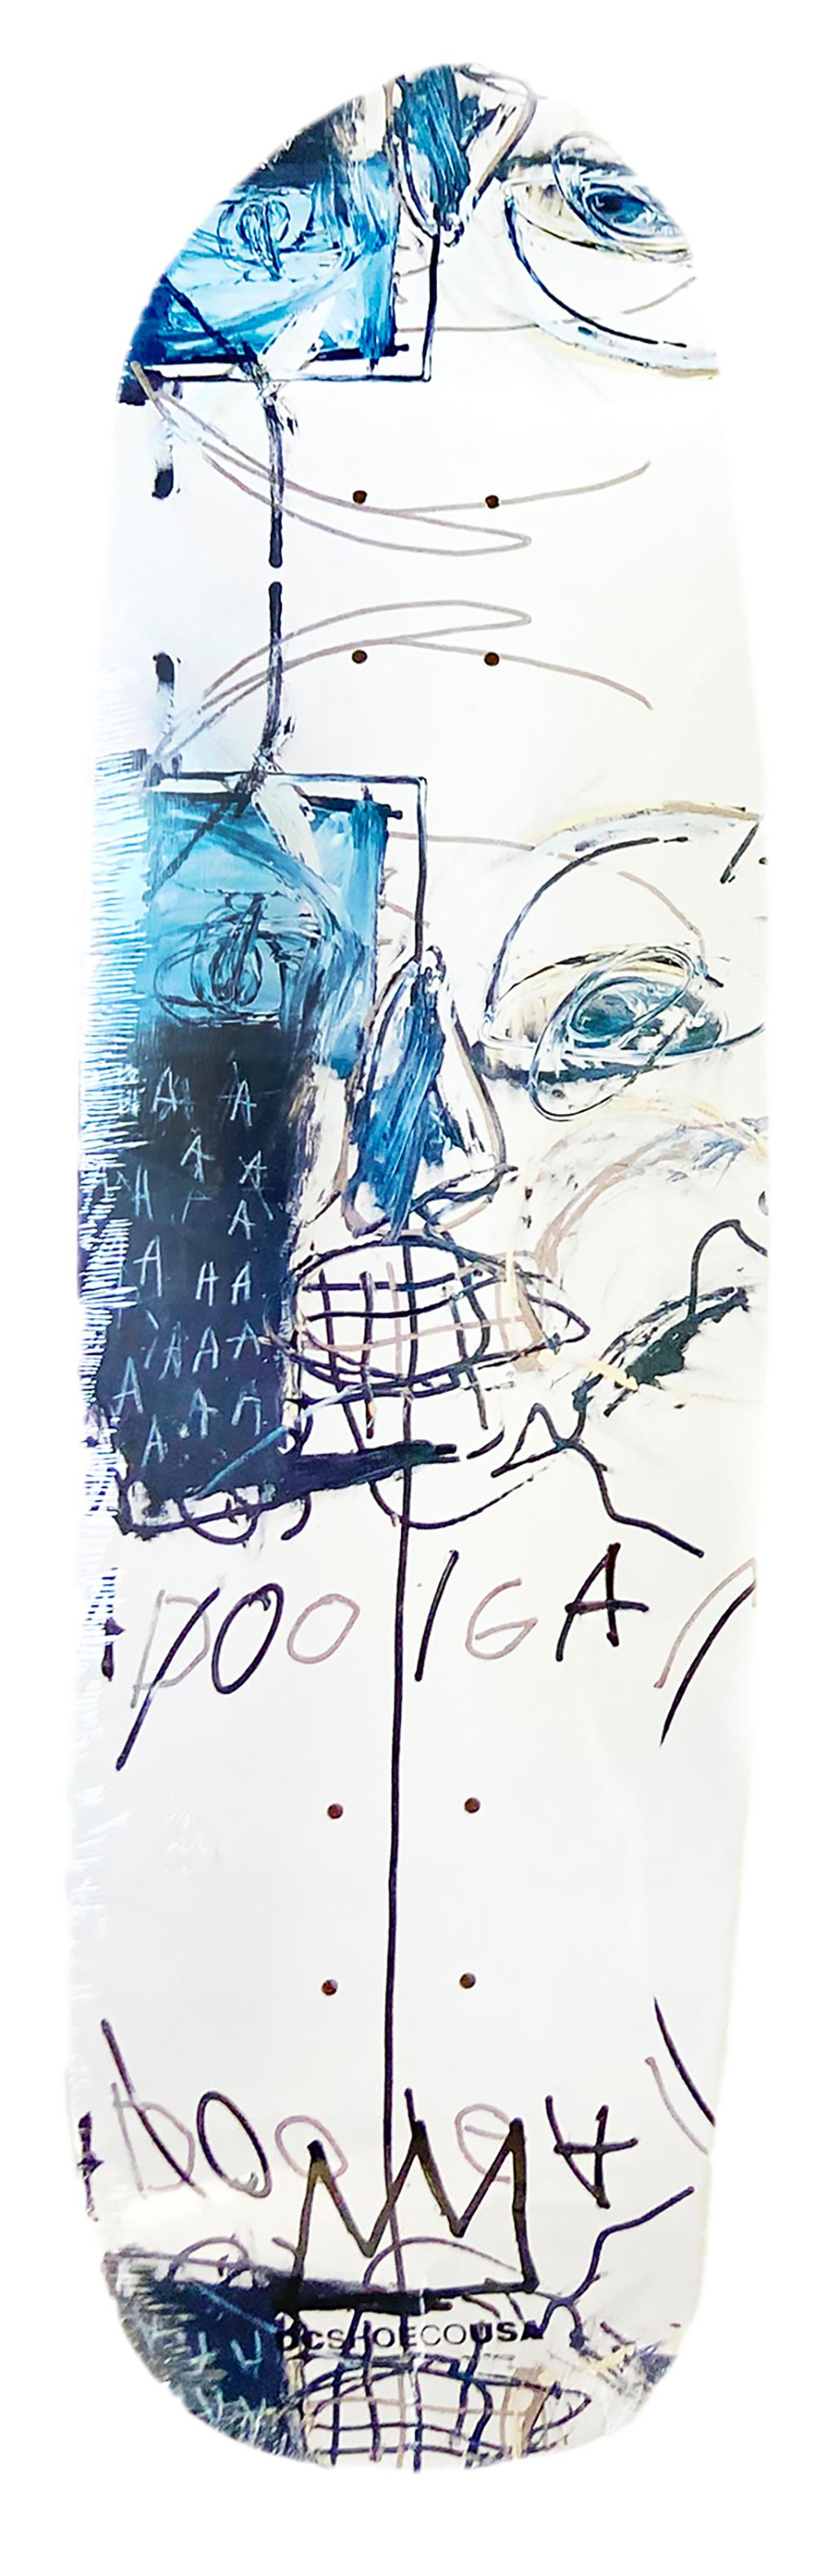 Les planches à roulettes de Jean-Michel Basquiat :
Jeu complet de trois planches de skateboard Jean-Michel Basquiat en édition limitée, sous licence de la succession de Jean-Michel Basquiat en collaboration avec Artestar en 2021, comportant des